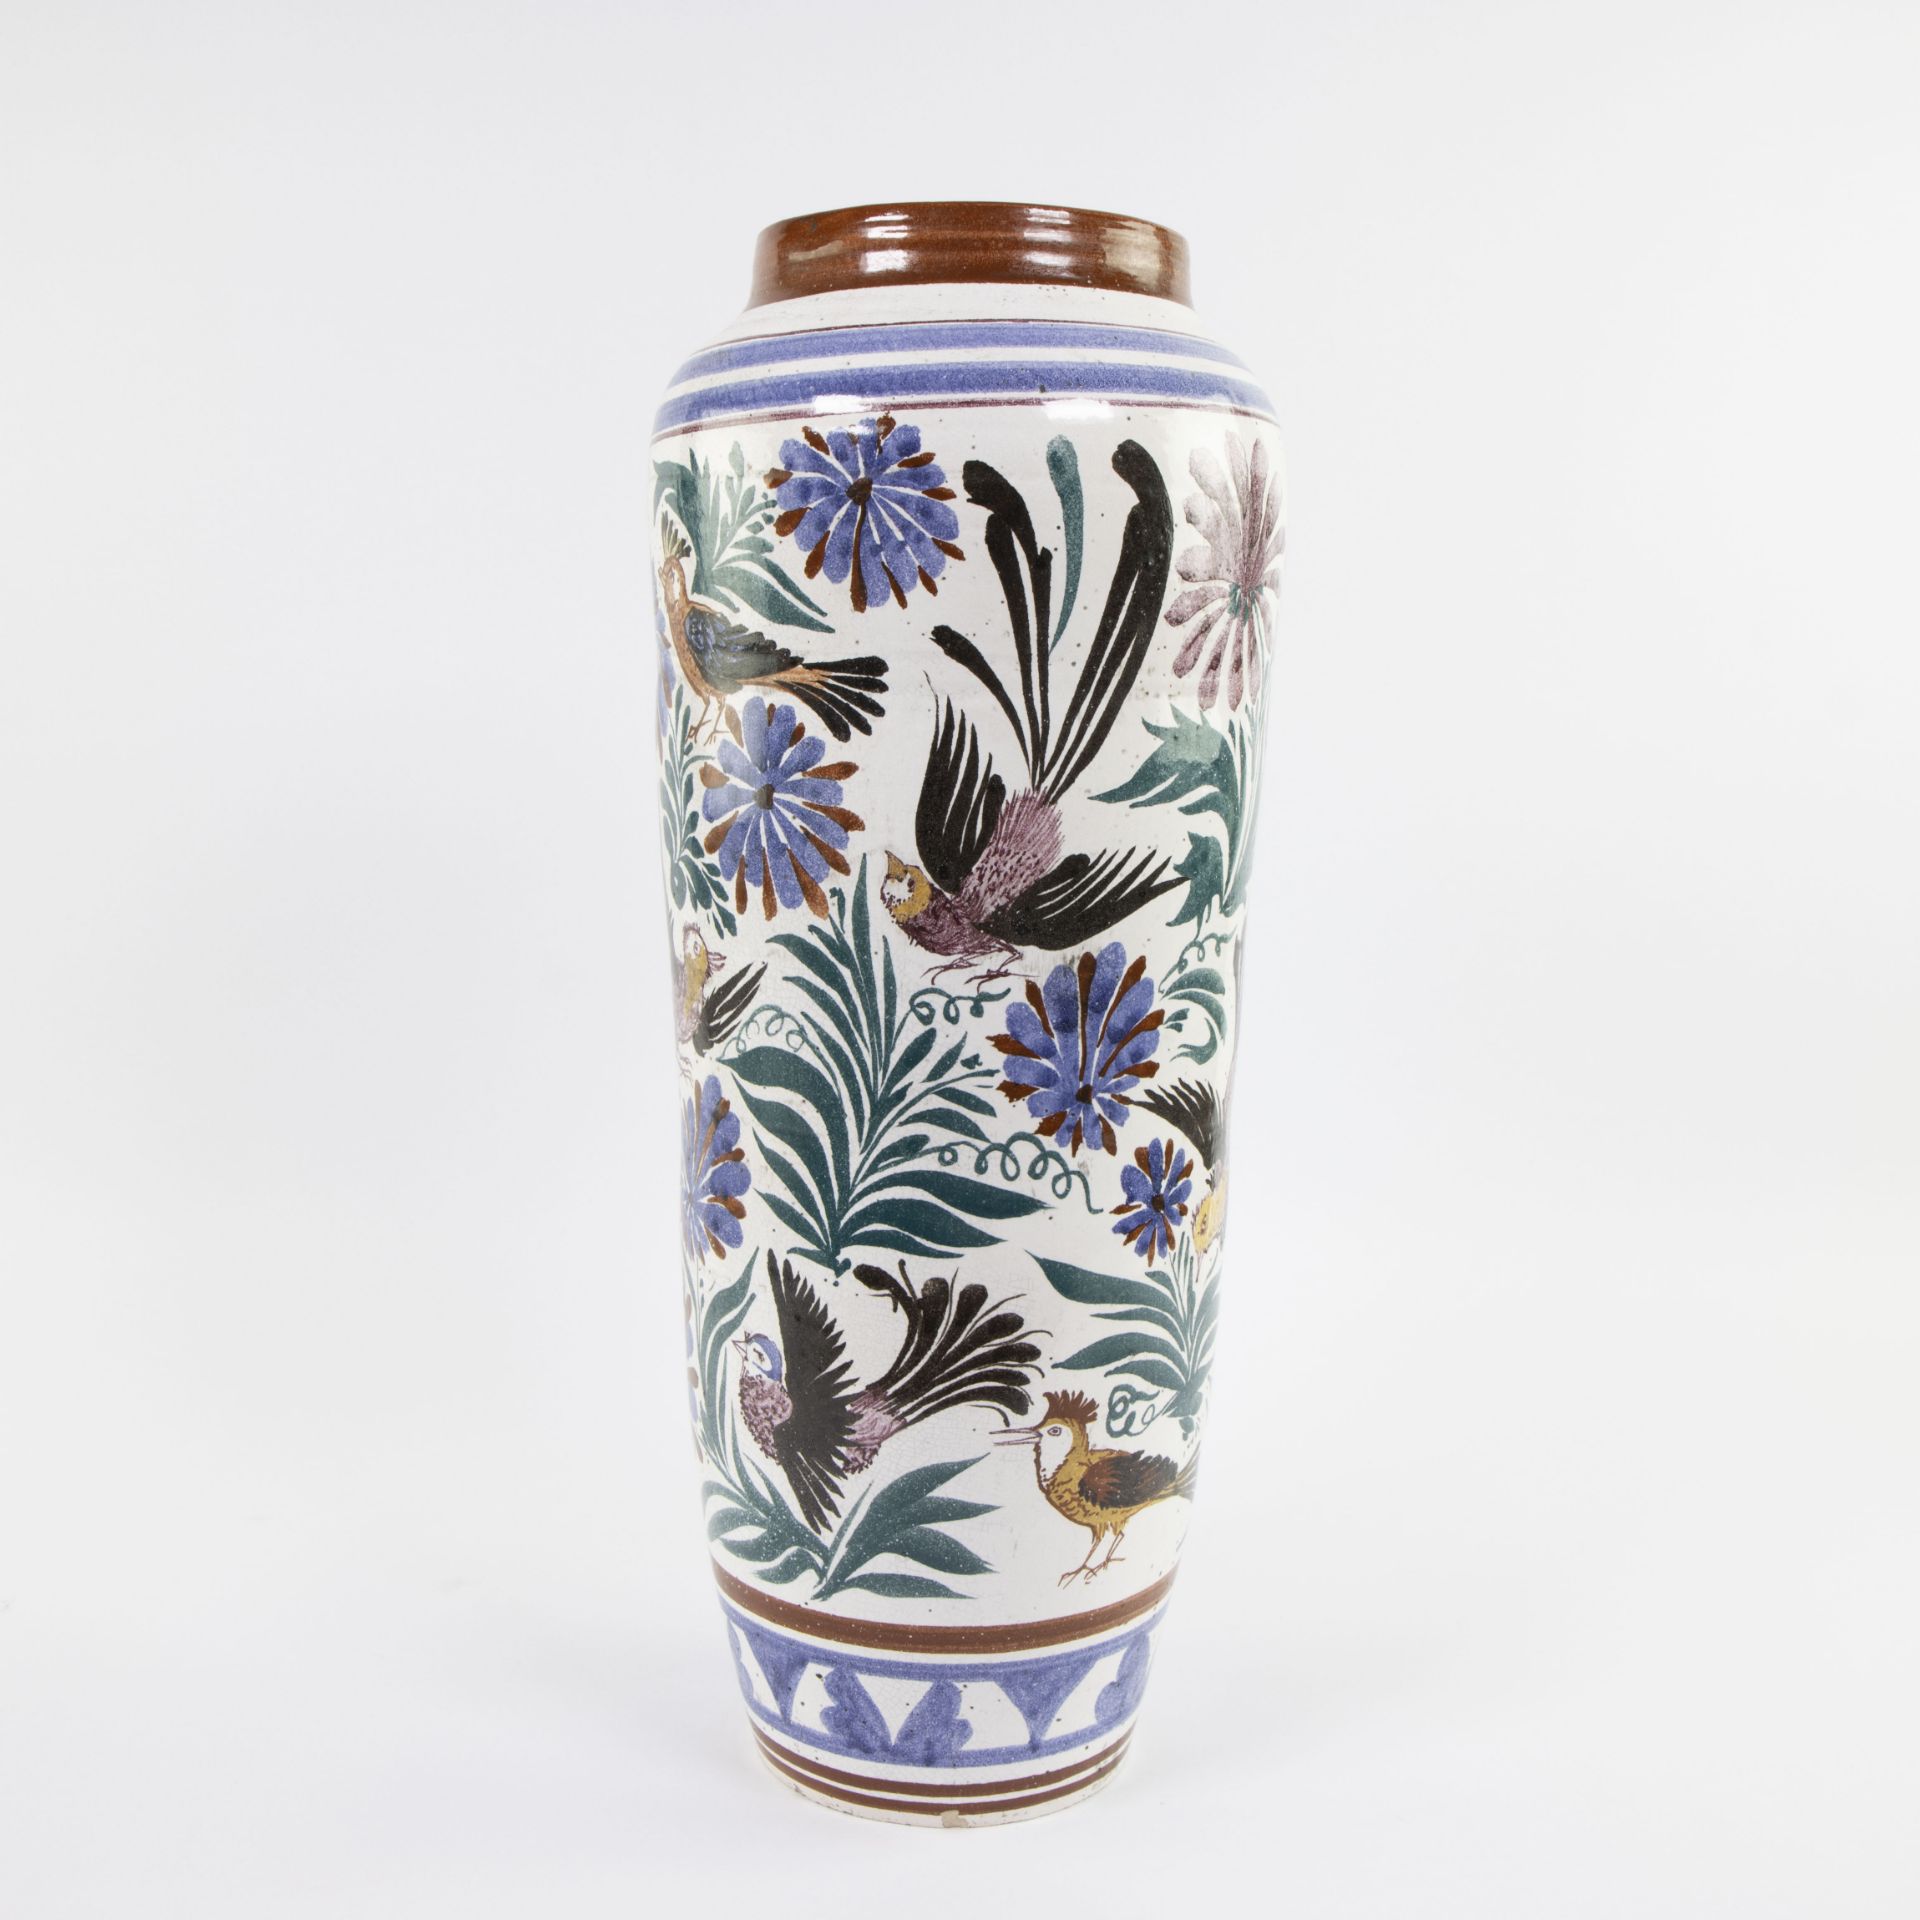 Joost Marechal, Kerammar Brugge - Large ceramic vase with floral decor